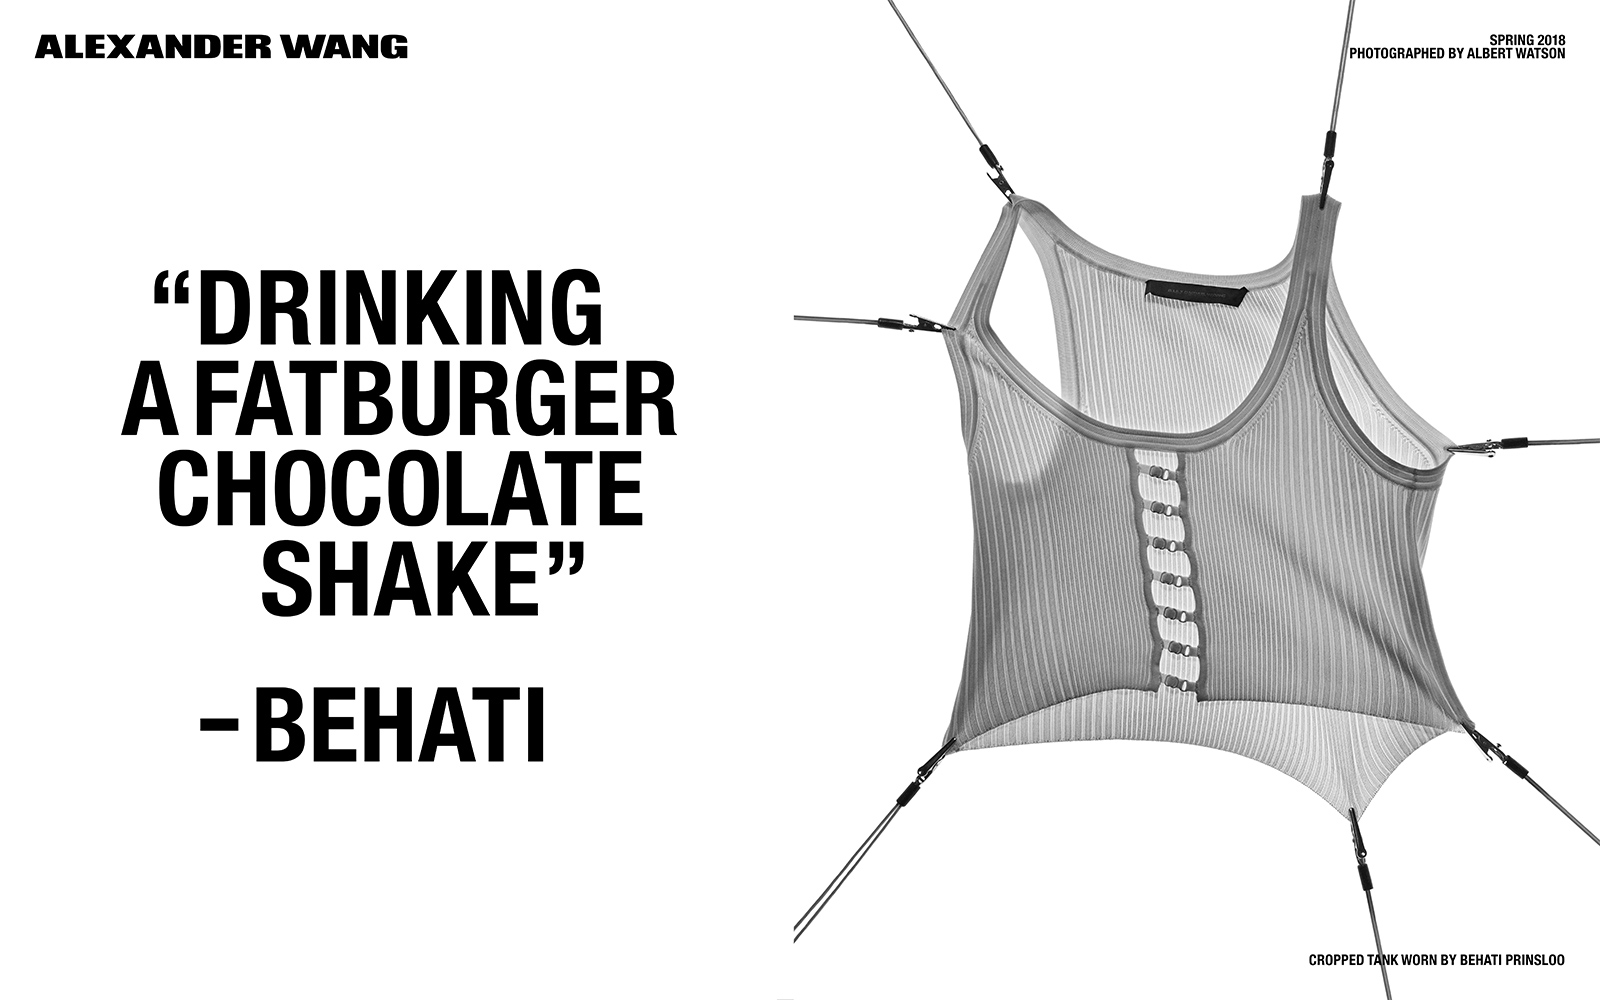 Przezroczysty top naciągnięty z sześciu stron spinaczami, obok cytat "drinking a fatburger chocolate shake"-Behati